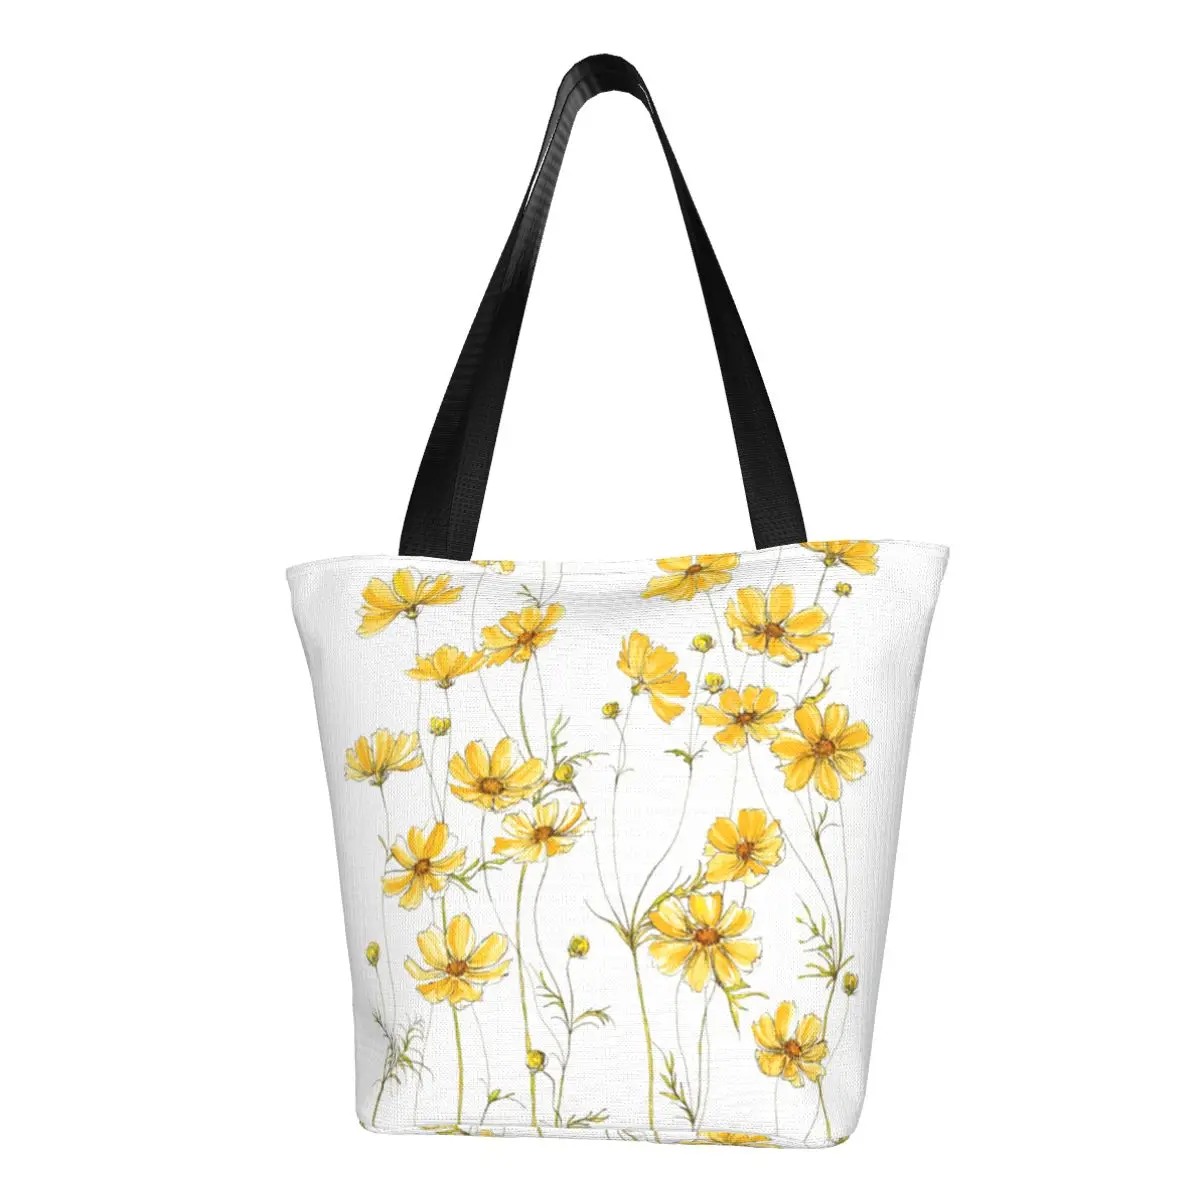 

Желтая сумка-шоппер с цветами из космоса, сумка через плечо с маргаритками и природными полевыми цветами, сумка-тоут из ткани для студентов, сумки с эстетическим принтом